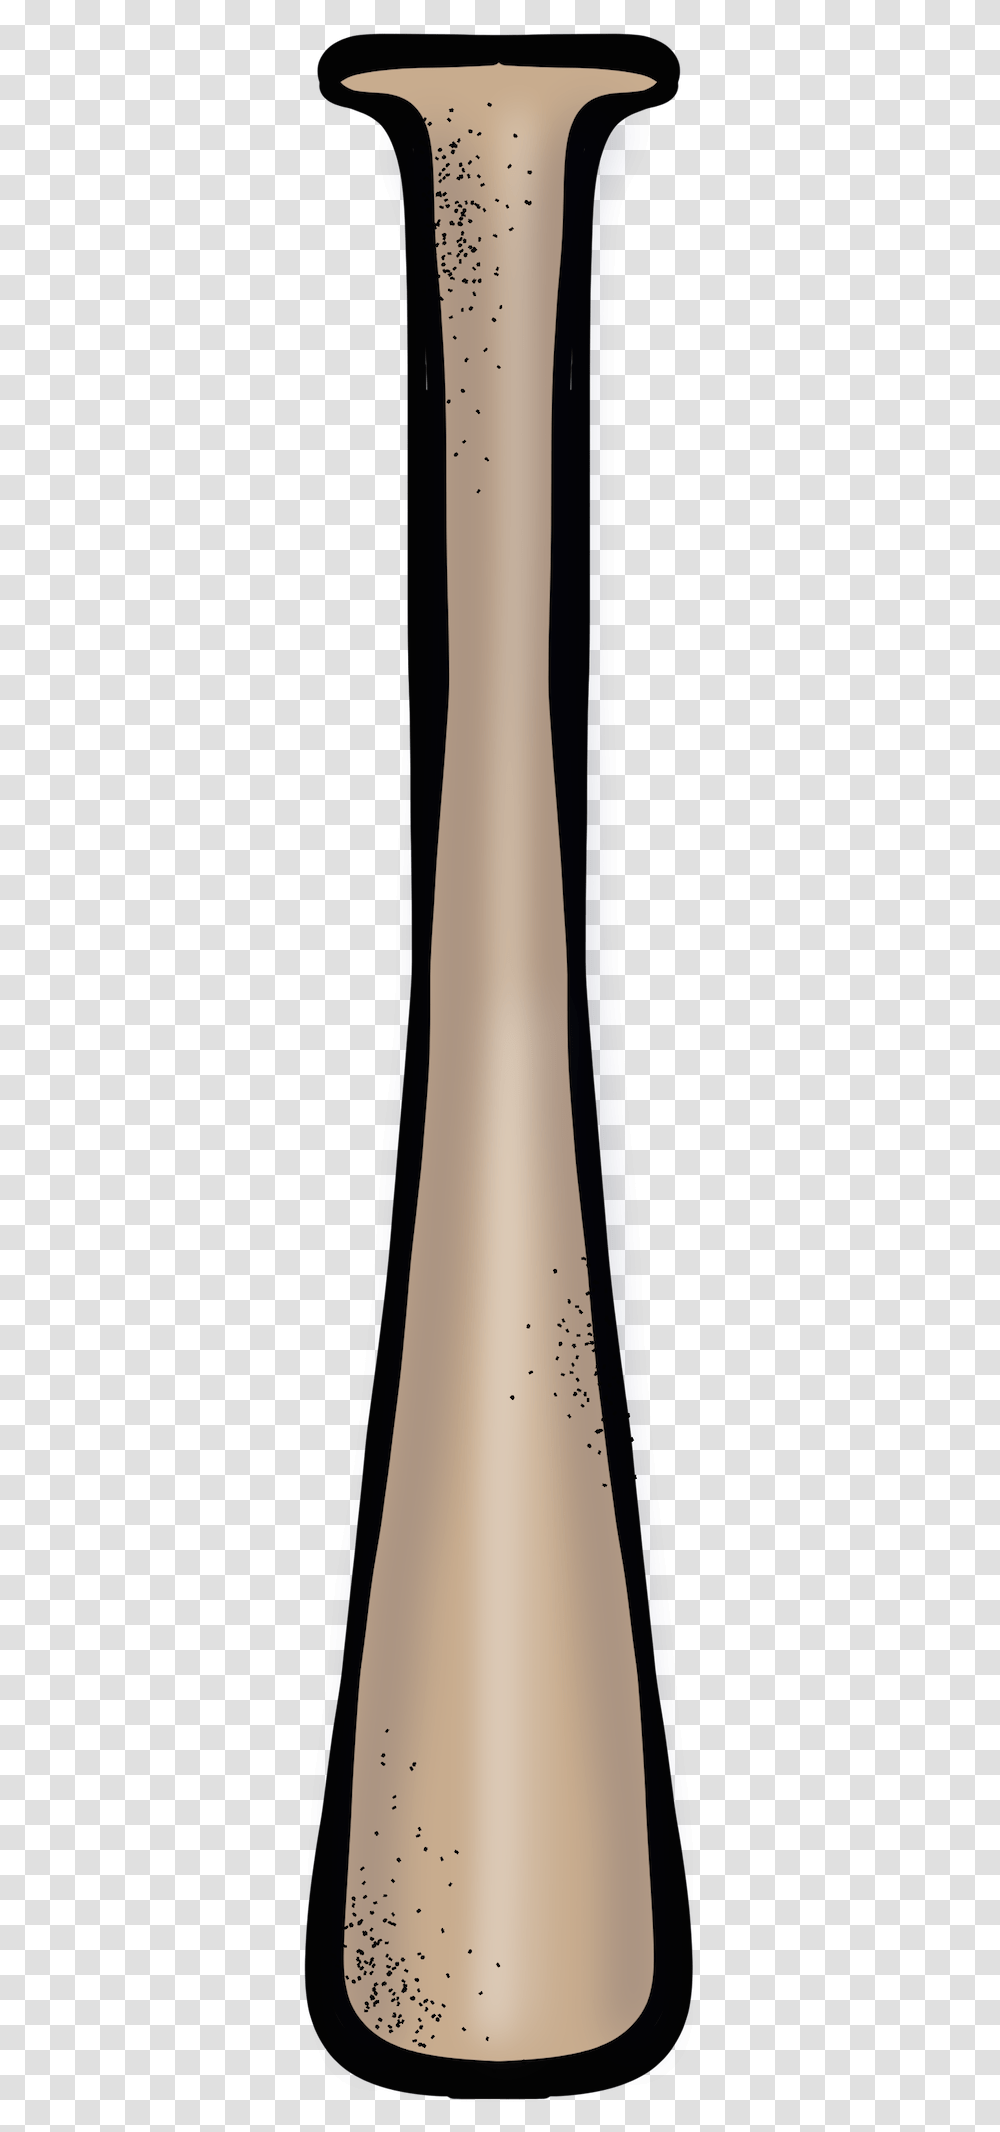 Vase, Bottle, Alcohol, Beverage, Tie Transparent Png